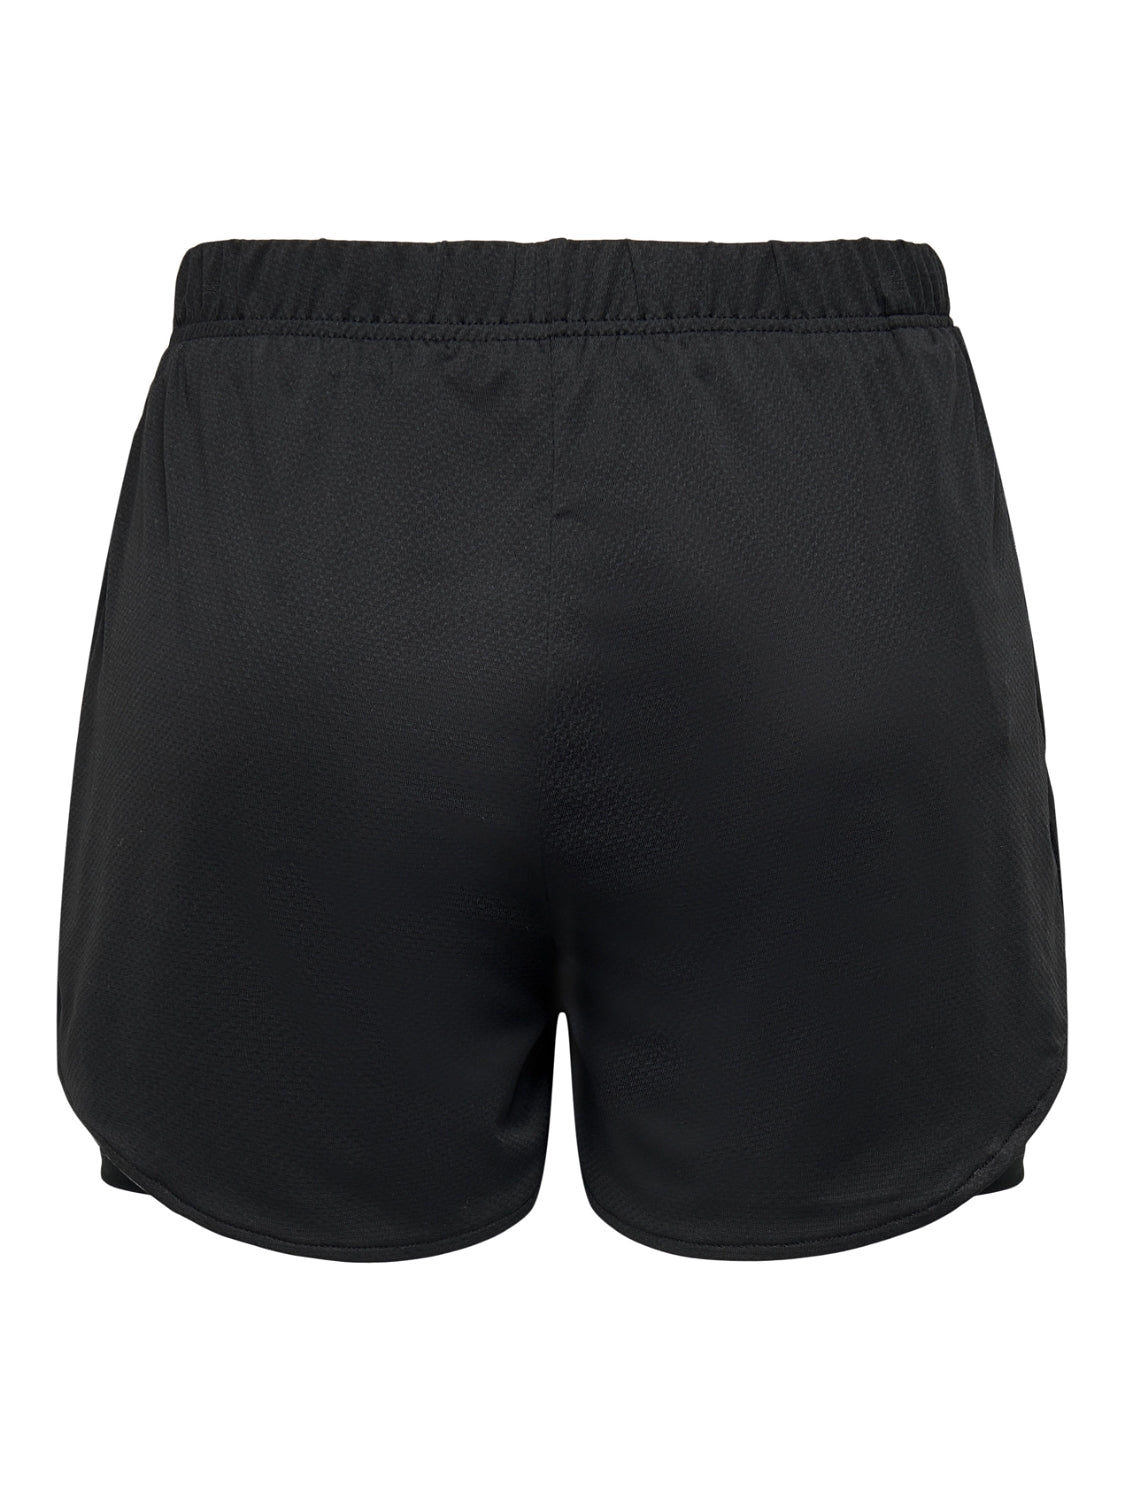 ONPMILA-2 Shorts - Black